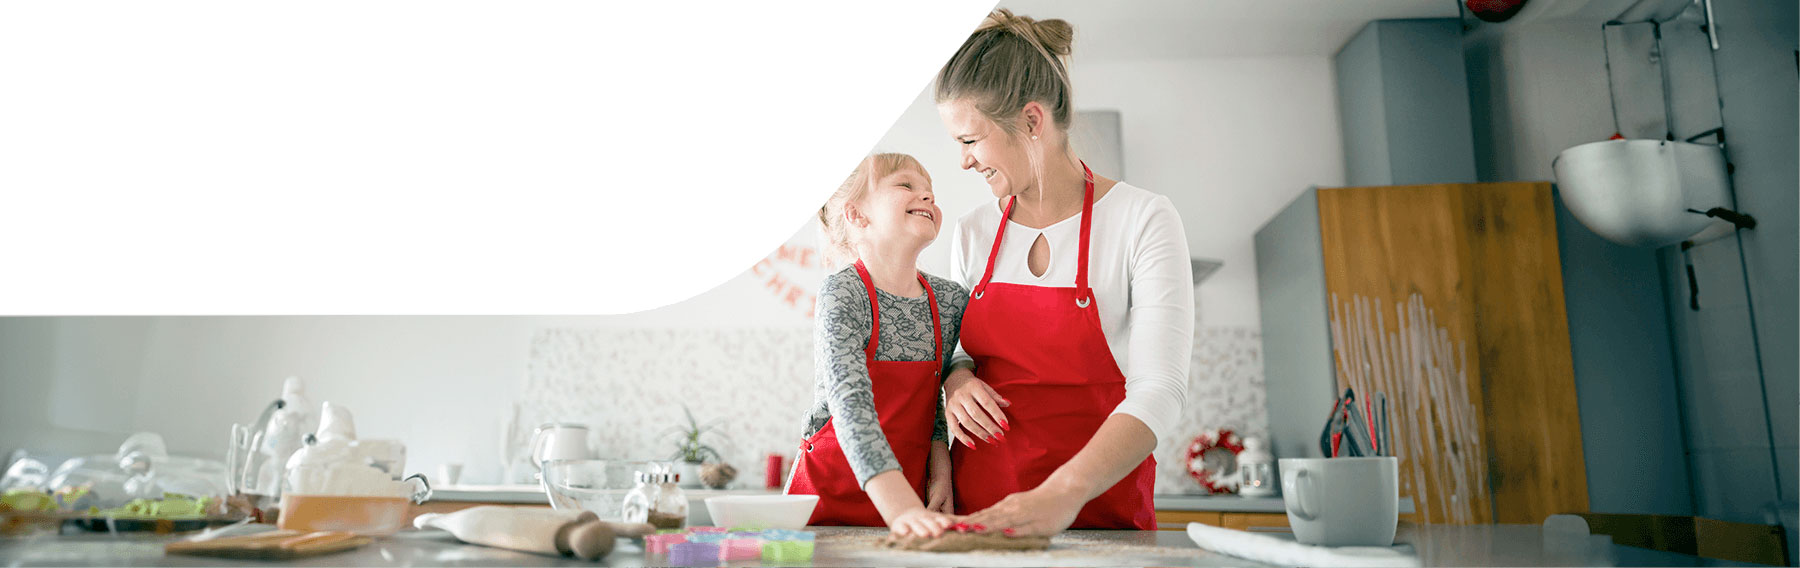 madre e hija cocinando con seguro de hogar generali